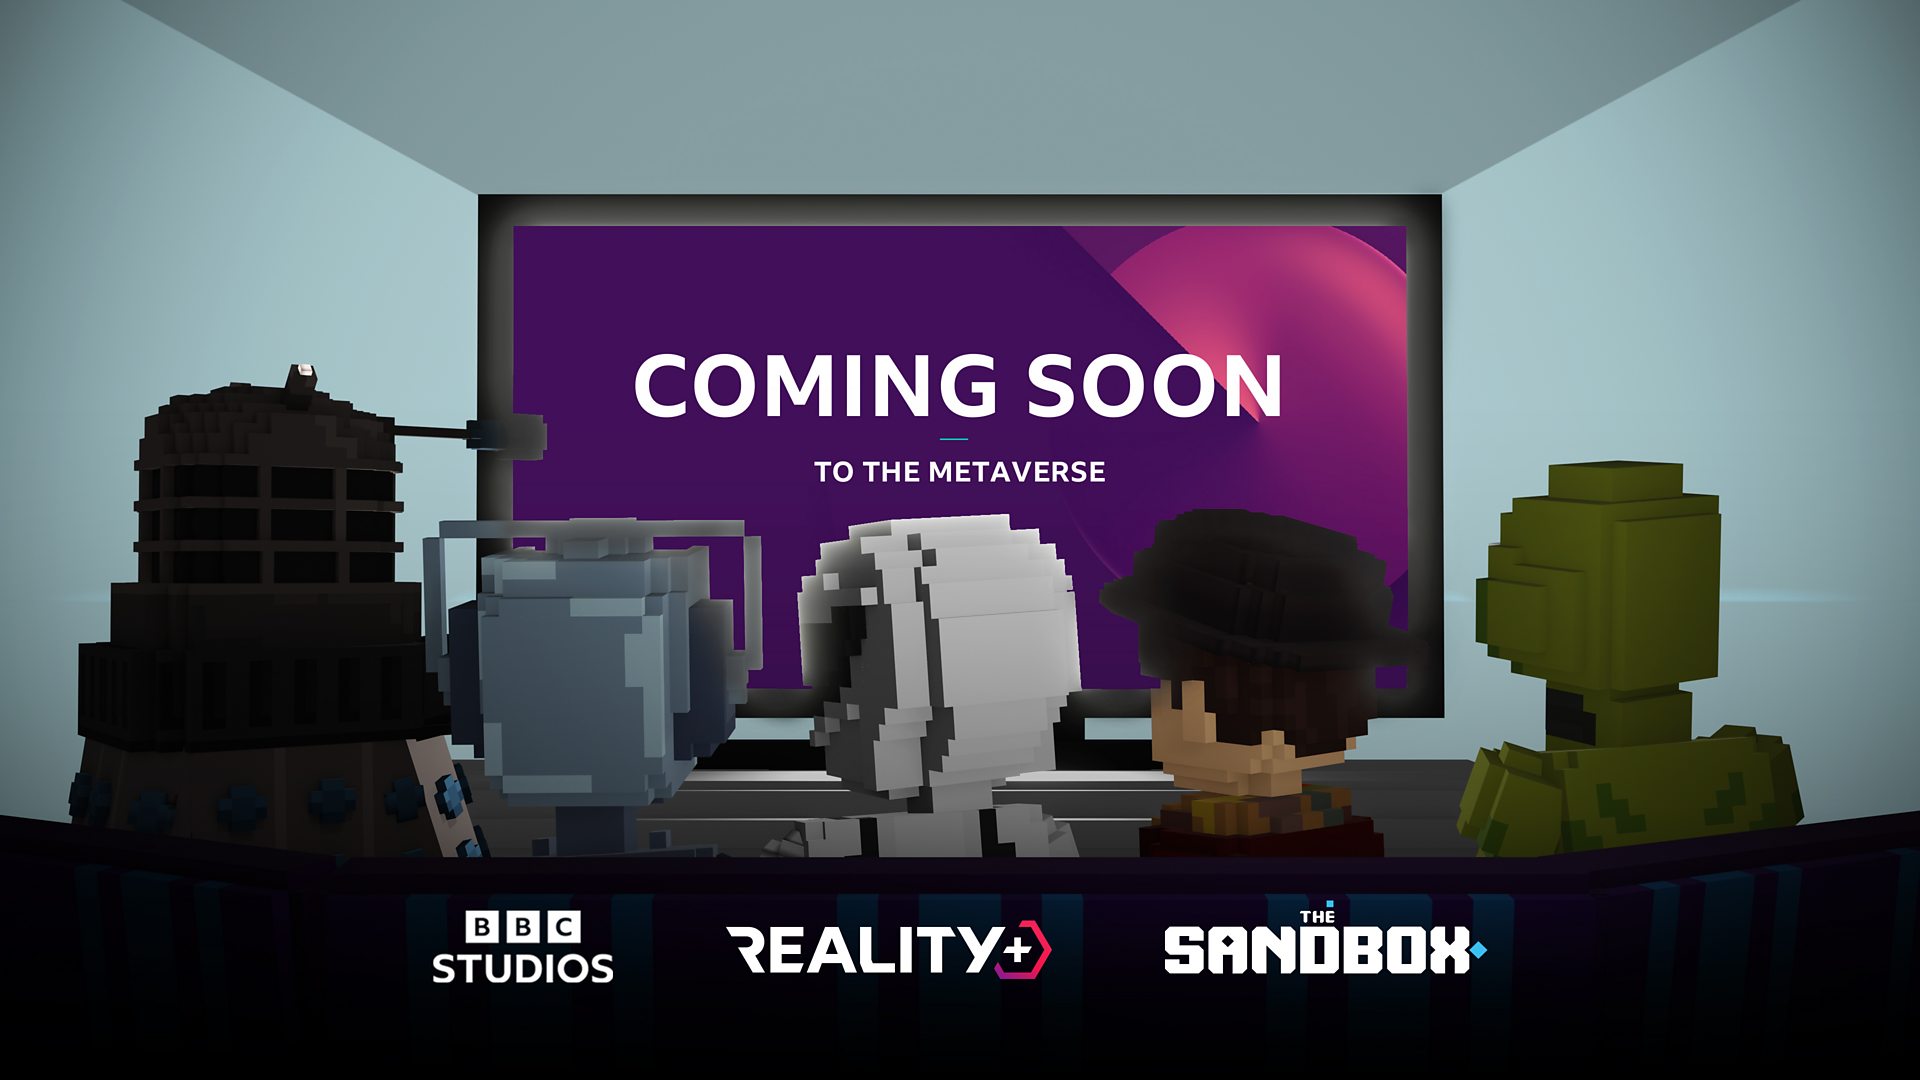 BBC Studios Метаверс туршлагыг нээхийн тулд Reality+-д нэгдсэн